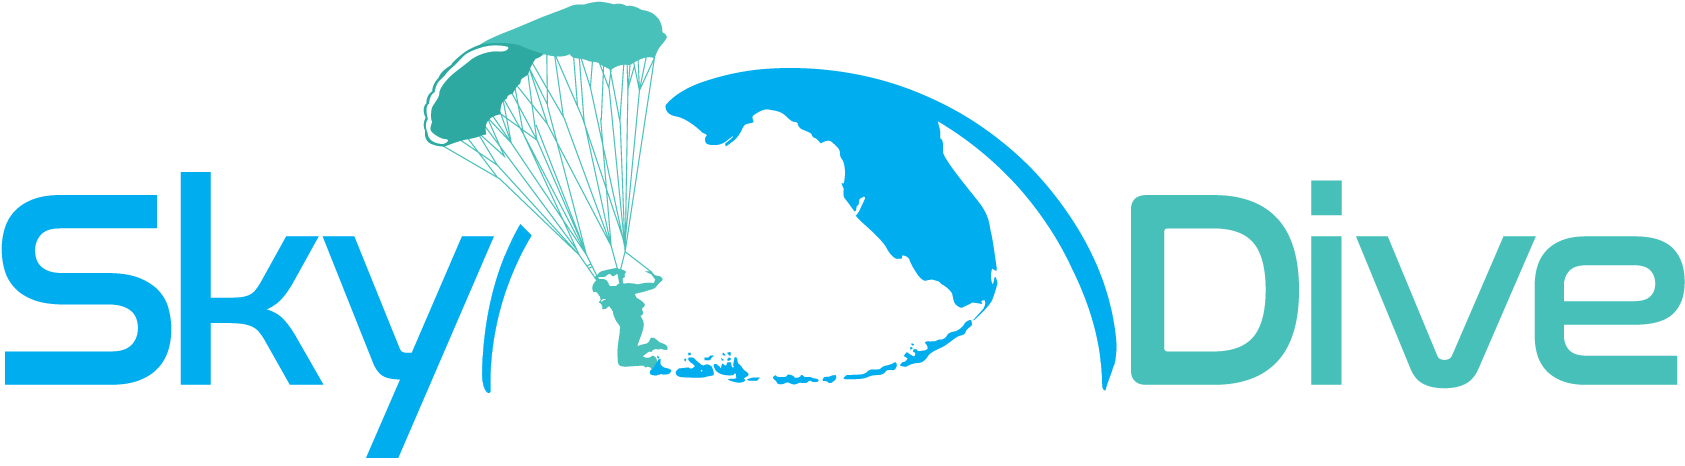 Skydive Key West - Sky Dıver Transparent Design For T Shırt Clipart (1724x505), Png Download